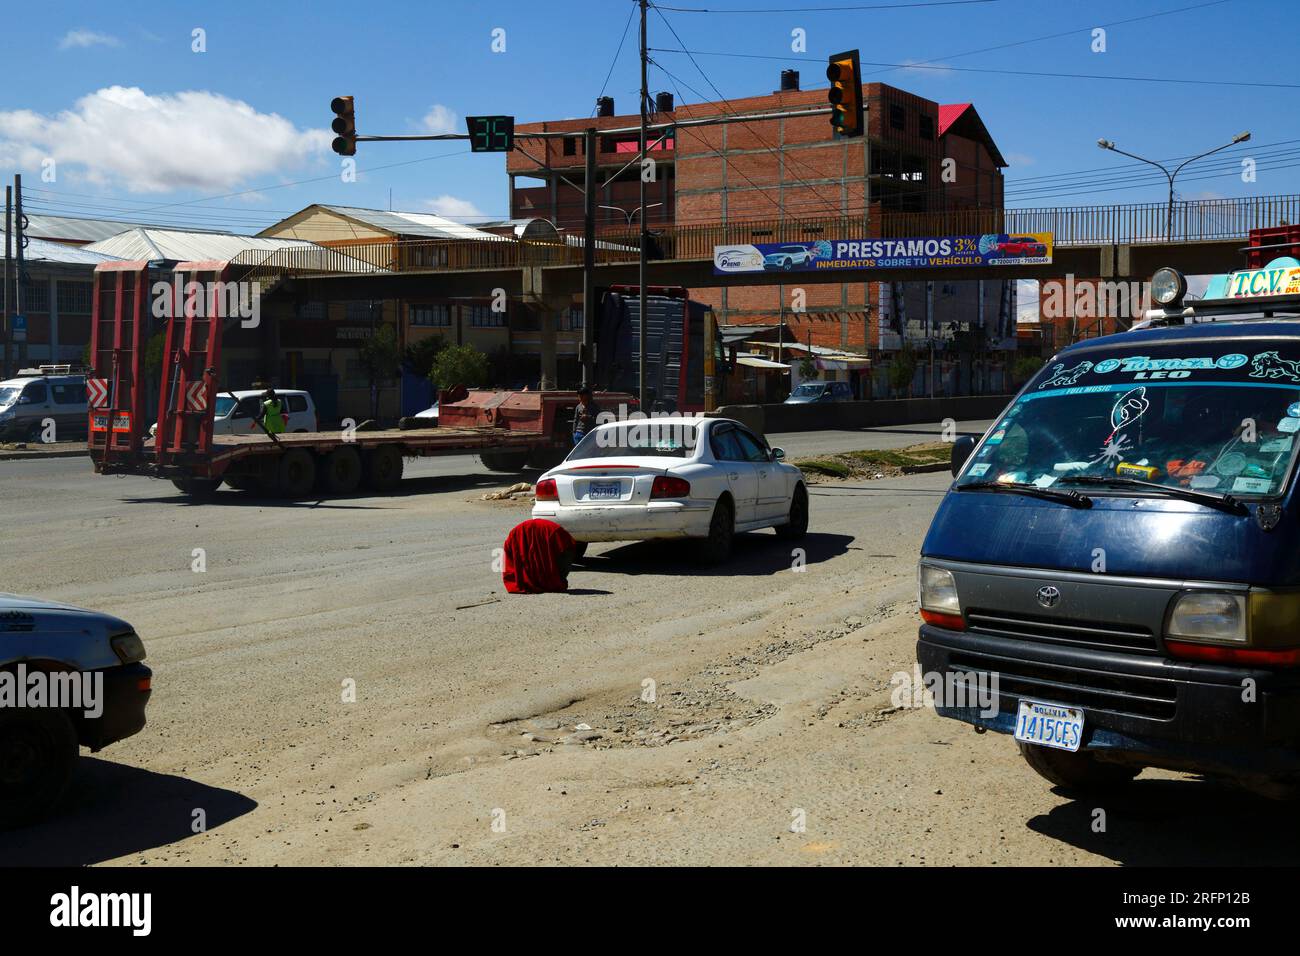 Die Hyundai wurde zerstört und das Rad war mit einer roten Decke bedeckt, die als Warndreieck in der Mitte der Hauptstraße durch Senkata, El Alto, Bolivien verwendet wurde Stockfoto